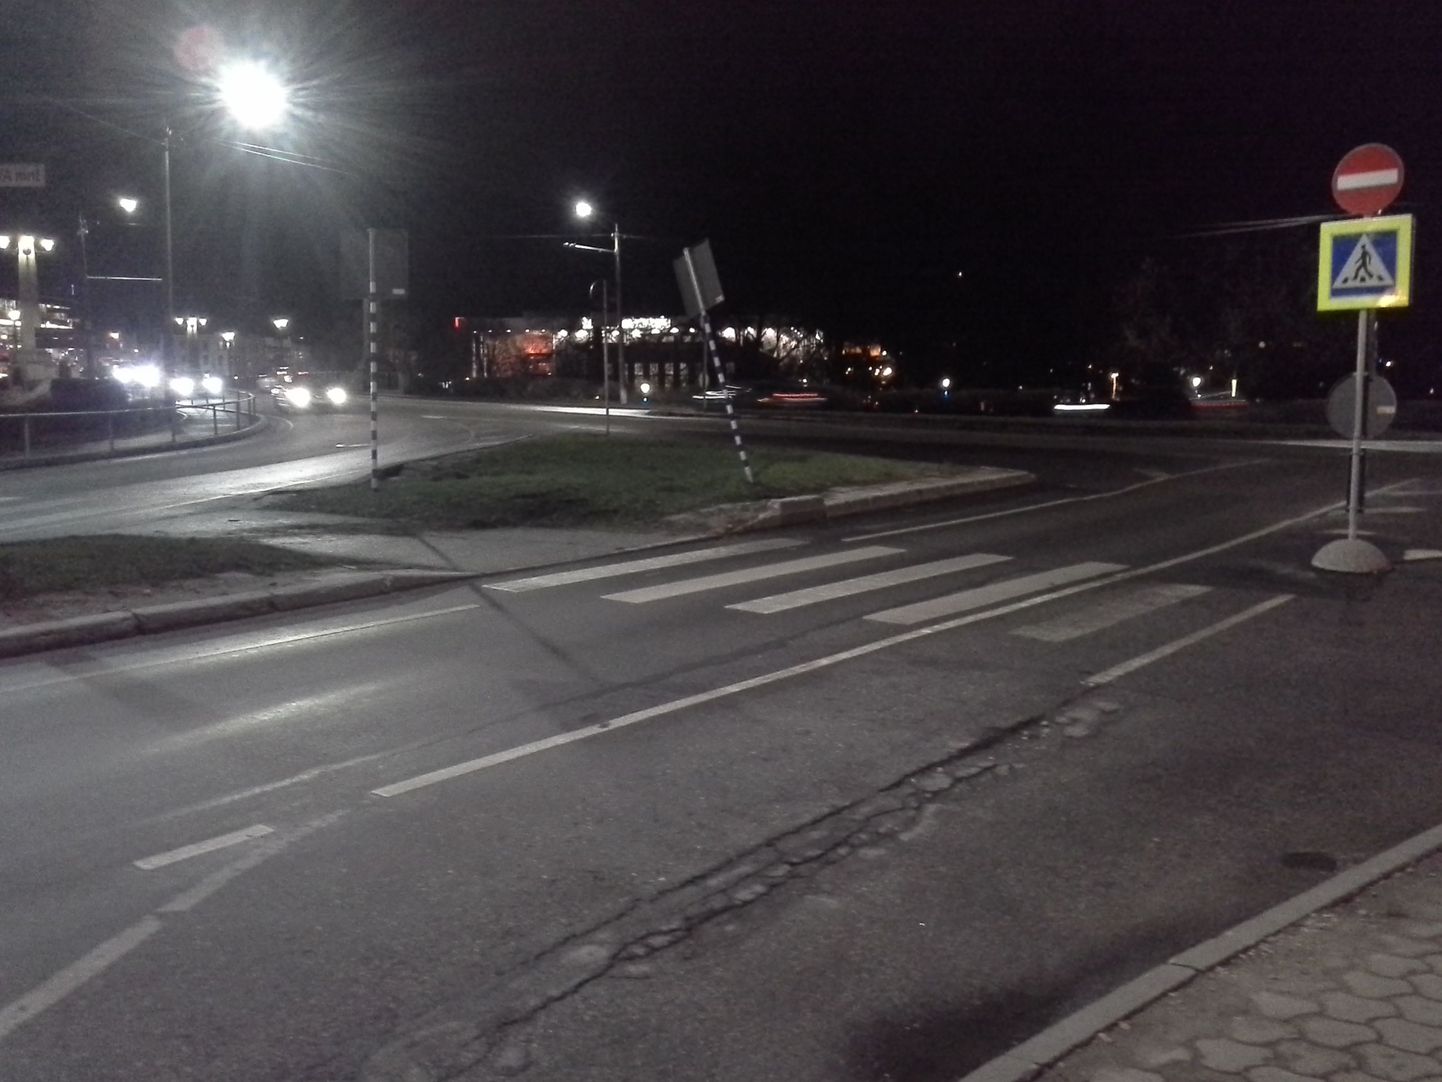 Sõiduauto Saab 9-5 paiskus Narva maanteel Škoda Octaviaga kokkupõrke järel Fortuuna tänava alguses sõiduradade vahel olevale haljasalale, vastu liiklusmärki ja seejärel otsa jalakäijate ülekäigurajal teed ületanud jalakäijale.